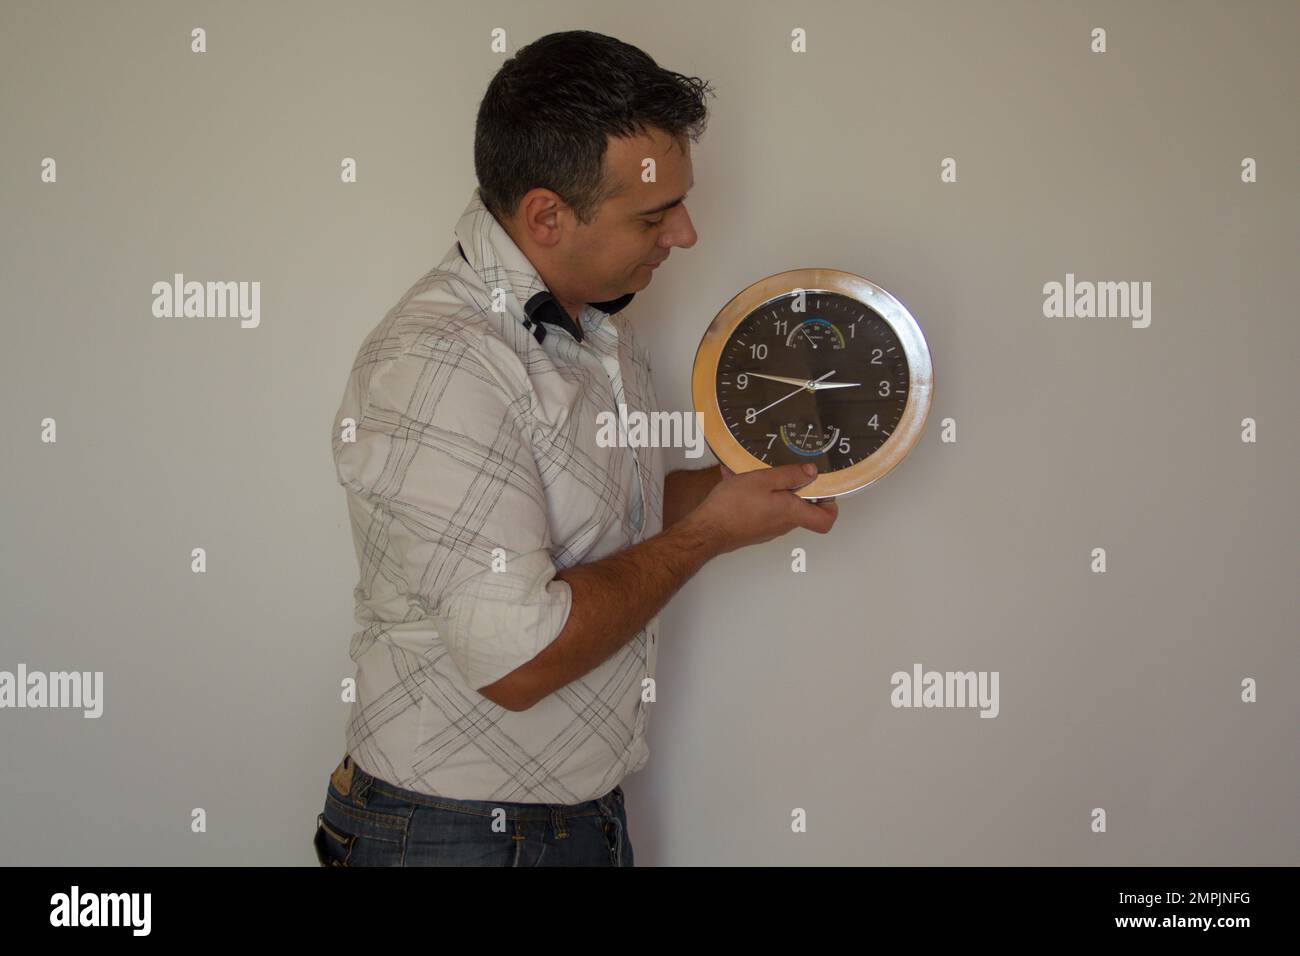 Bild eines Mannes, der eine Wanduhr hält, während er die richtige Uhrzeit einstellt. Stockfoto